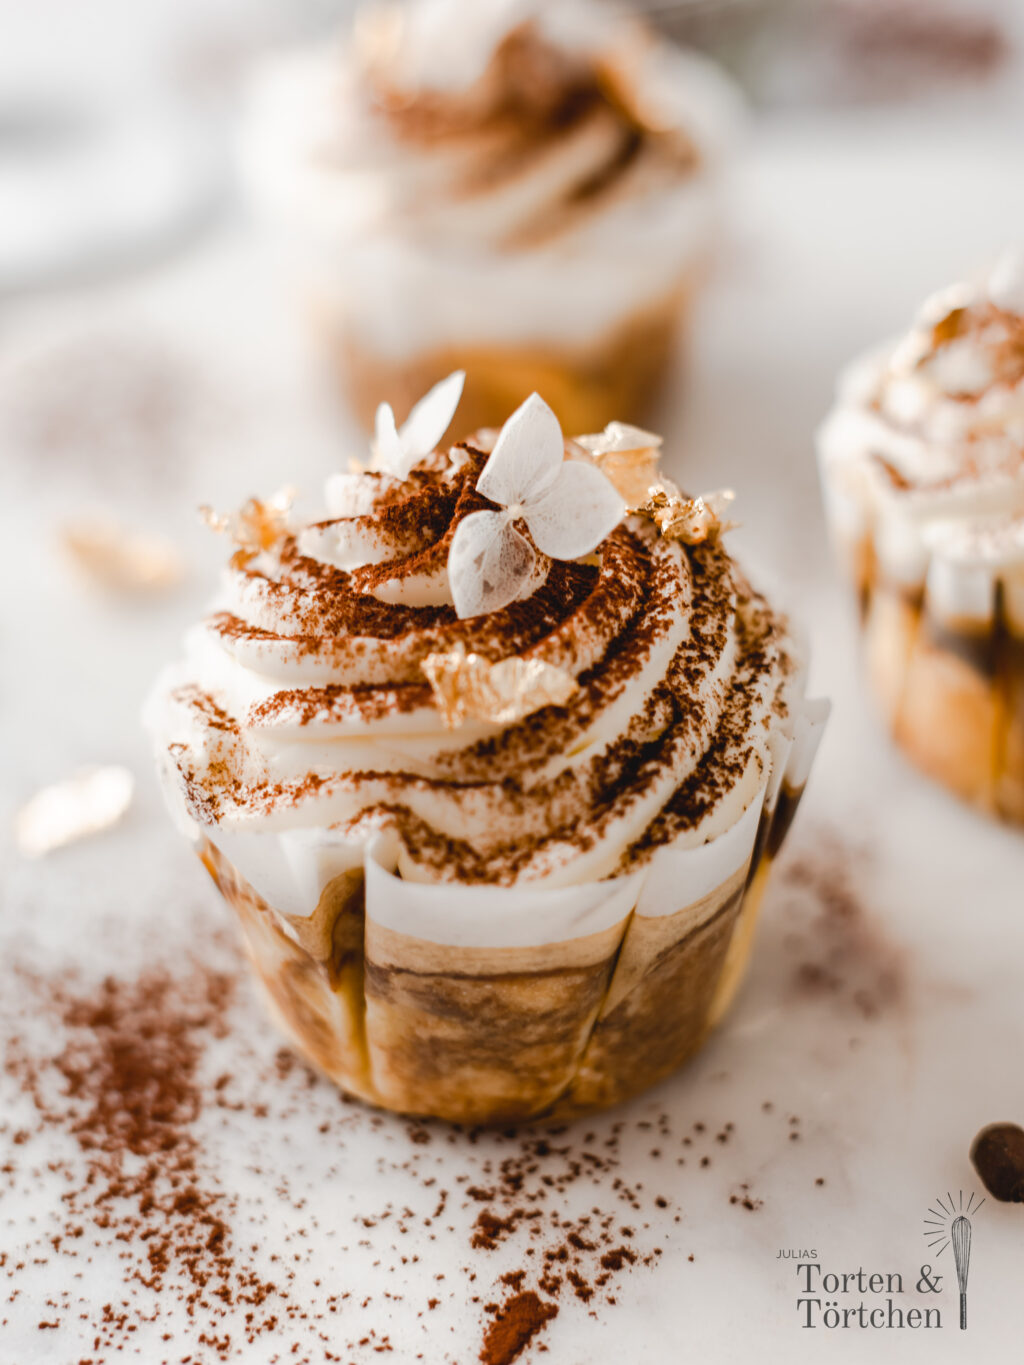 Super einfaches Rezept für cremige Tiramisu Cupcakes mit saftigem Muffin, samtigem Mascarpone Topping und herben Espresso. Schnell gemacht und ohne Buttercreme! #Cupcakes #Rezept #Backen #Tiramisu #Kuchen